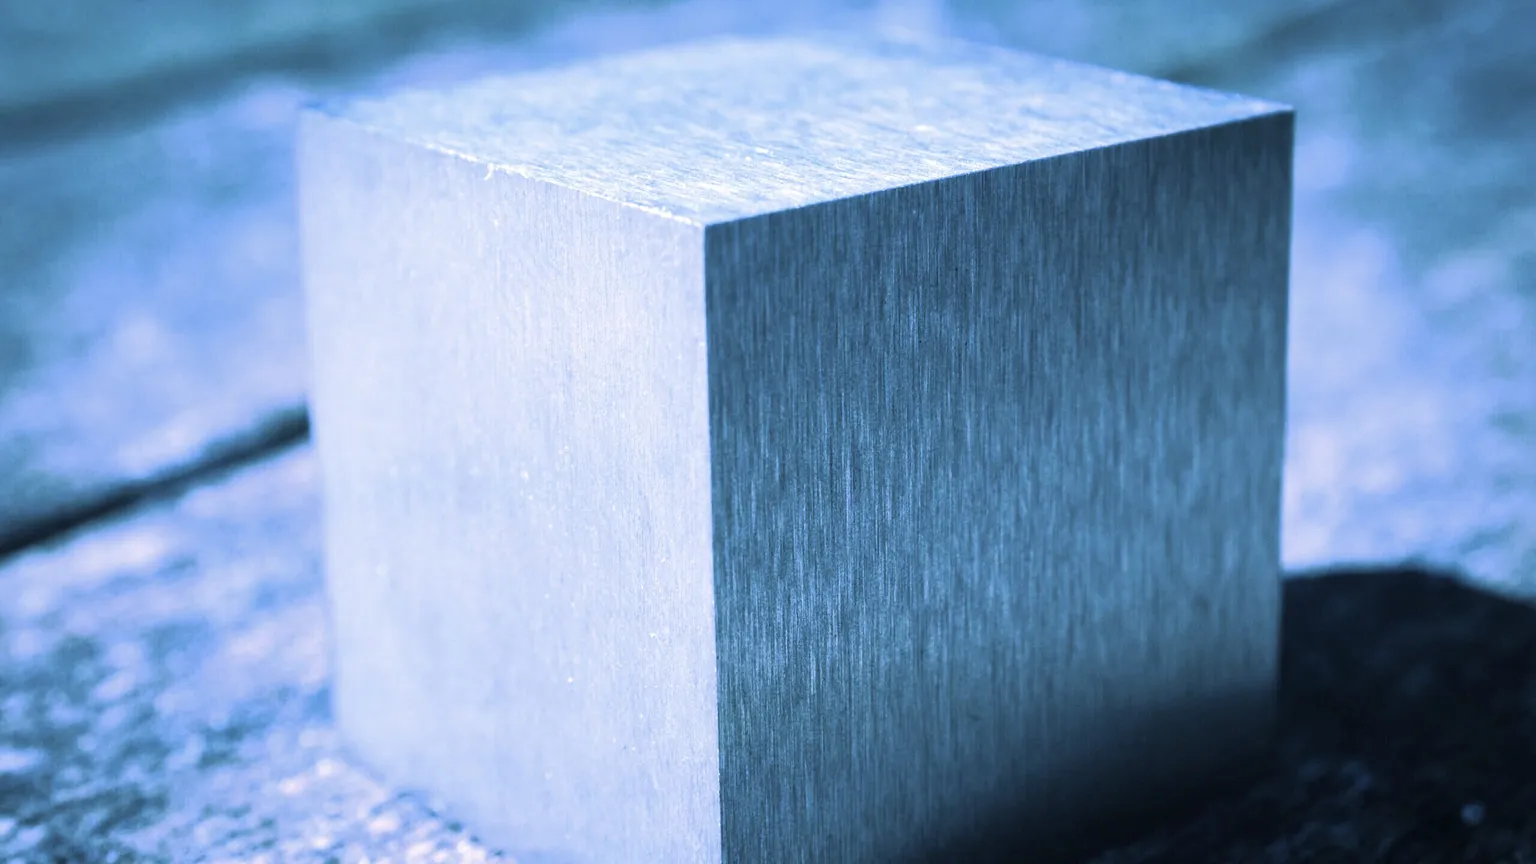 Un cubo de Tungsteno. Image: Flickr